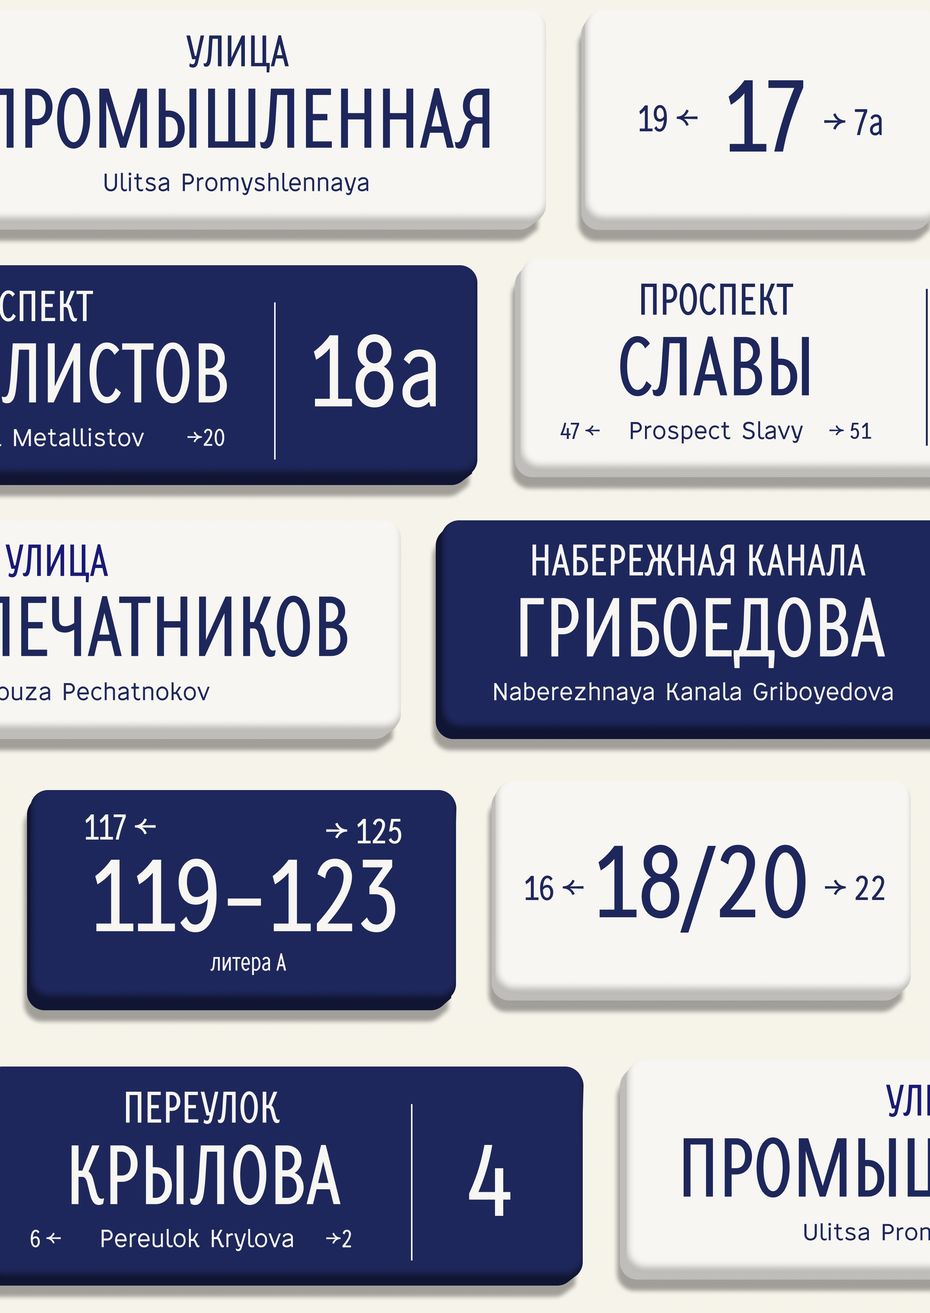 St.Sign typeface — шрифт для адресных табличек Санкт-Петербурга